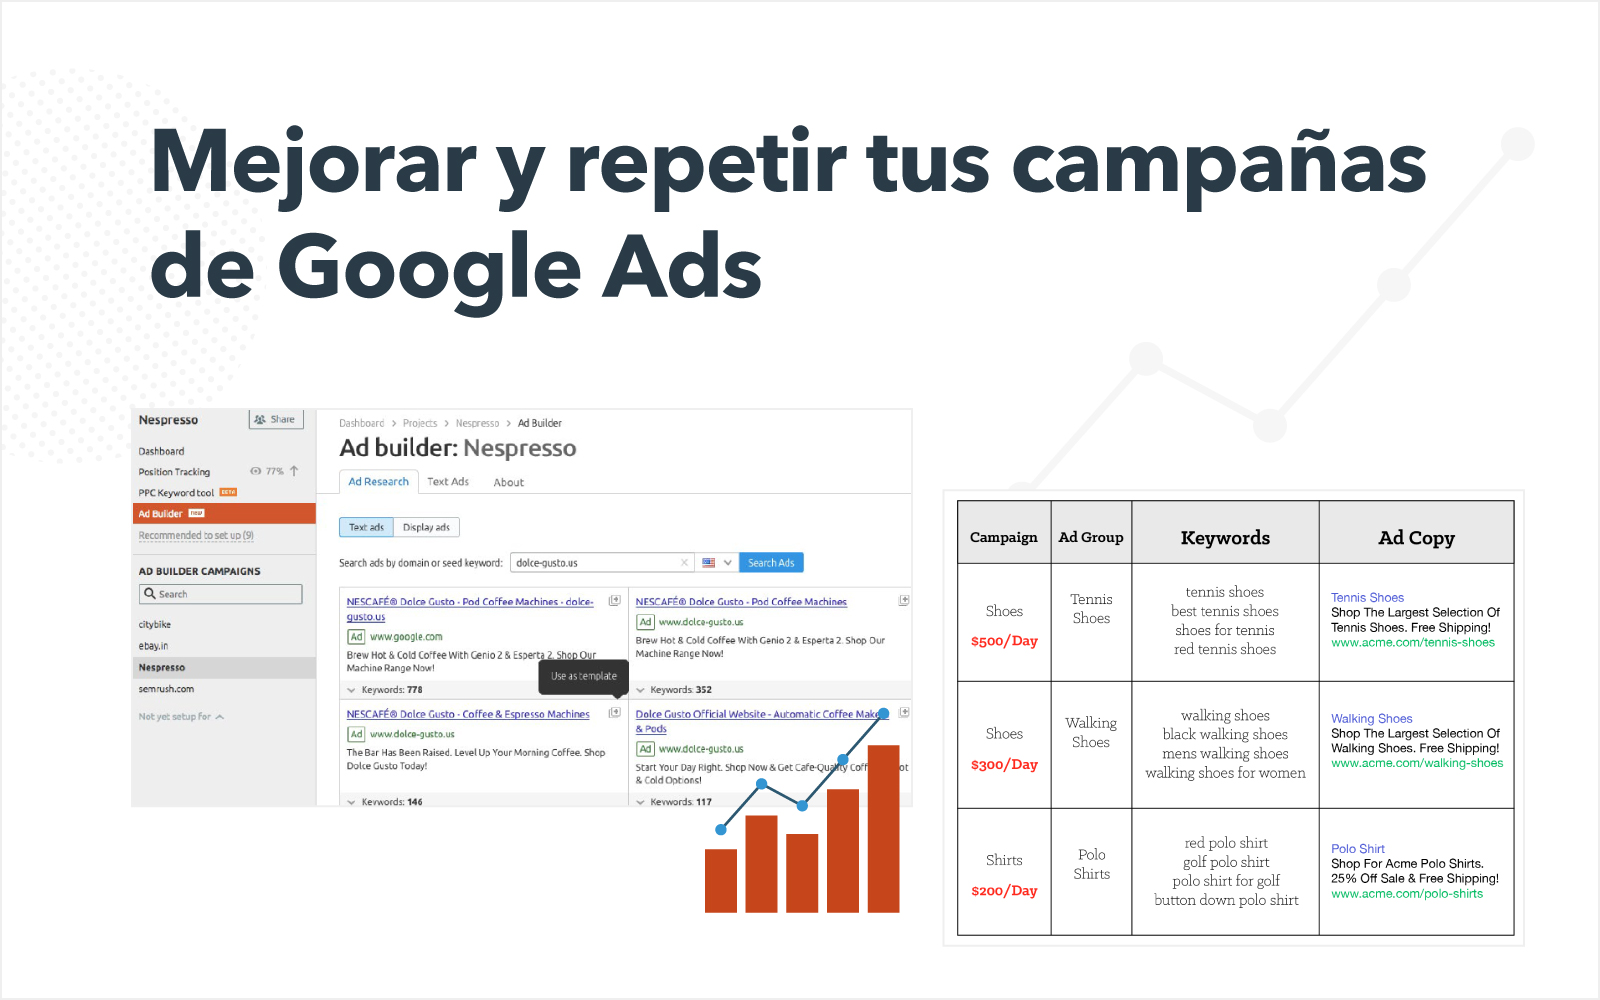 Mejorar y repetir tus campañas de Google Ads